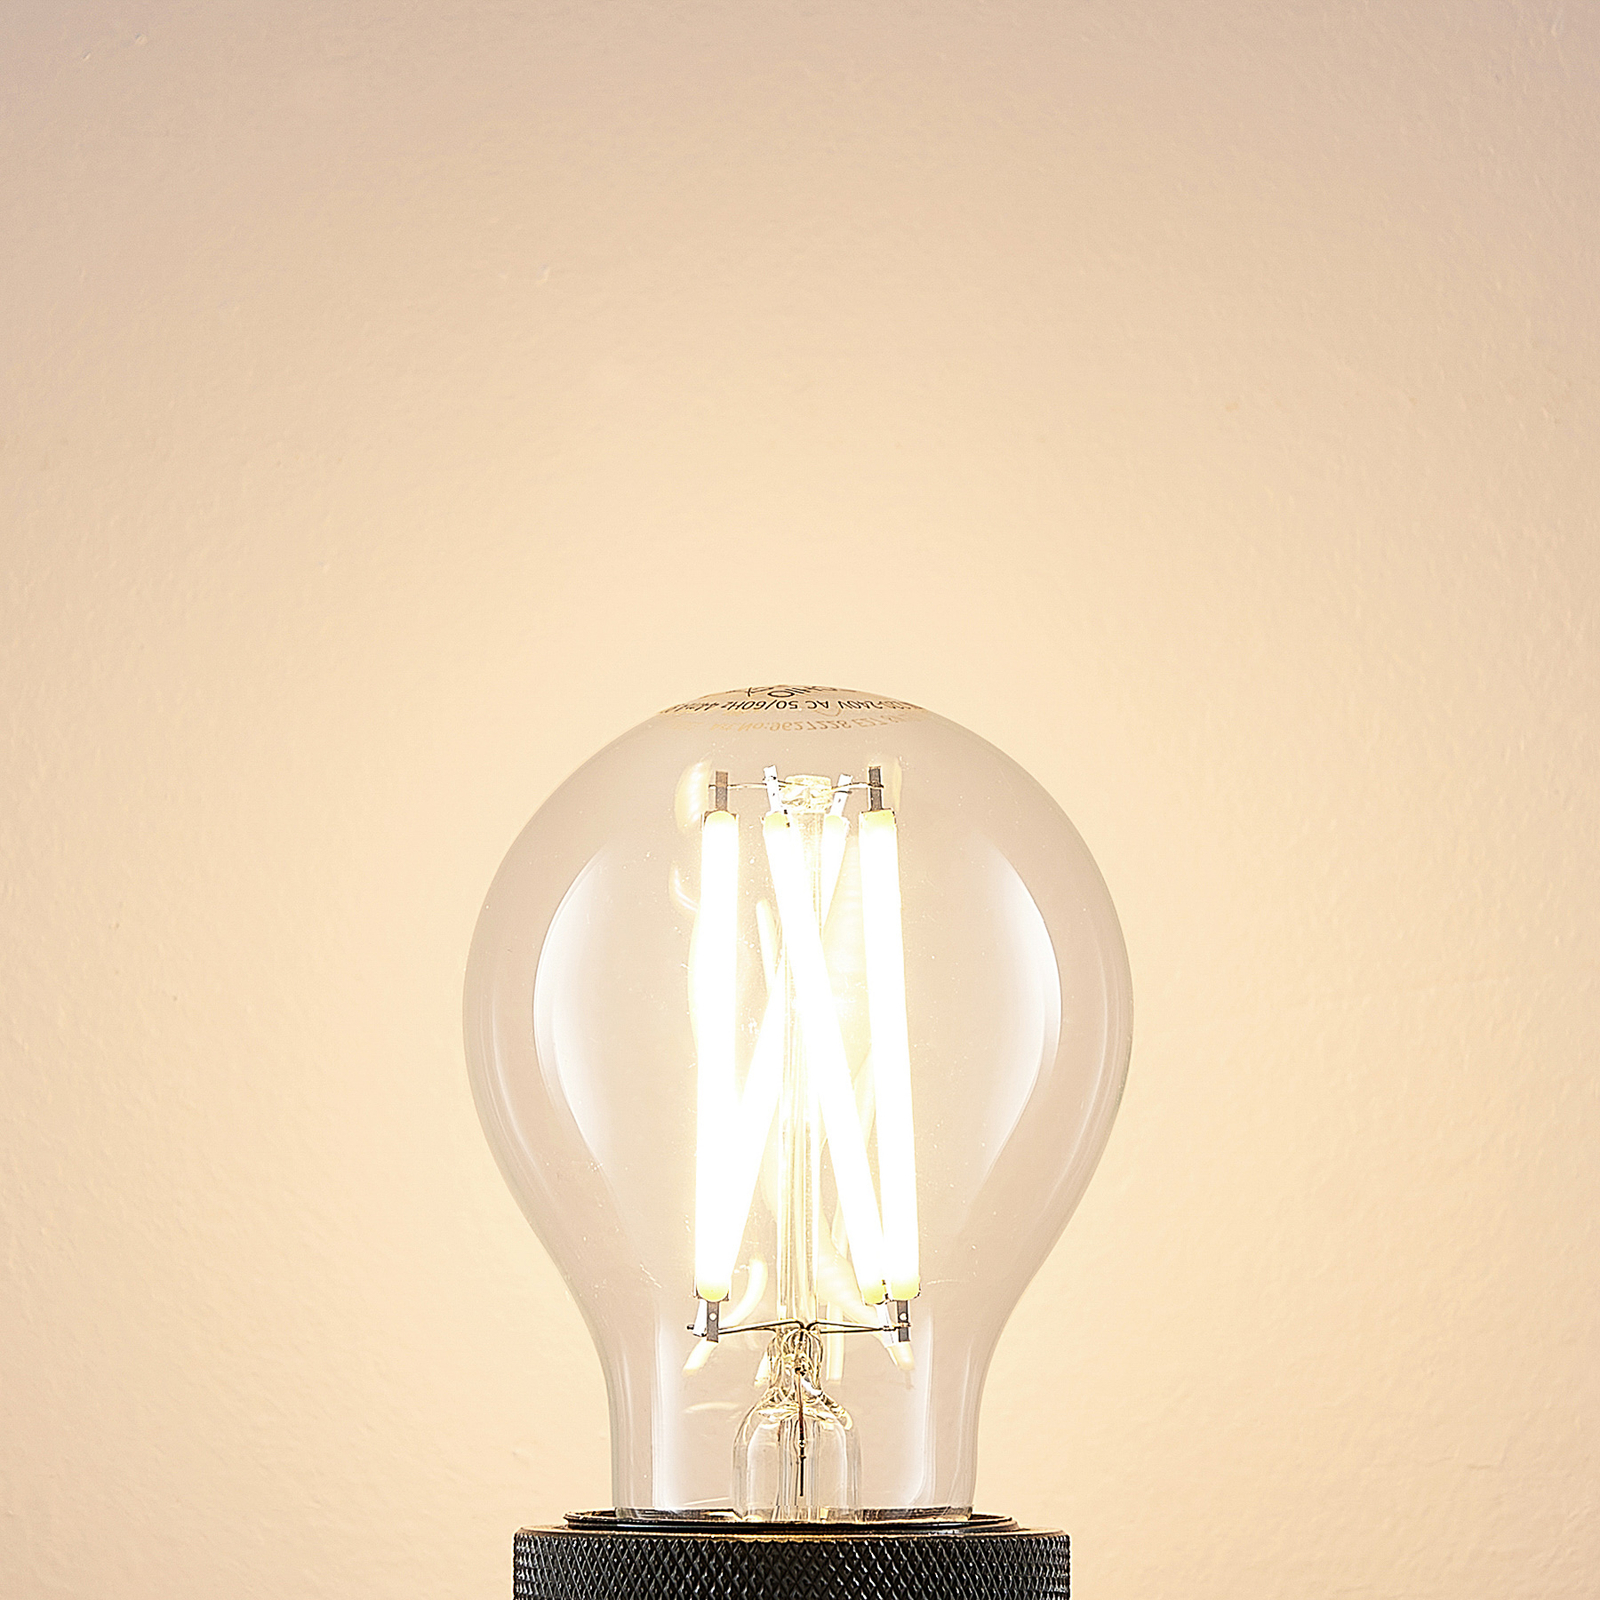 LED lamp E27 8W 2700K filament dimbaar per 3